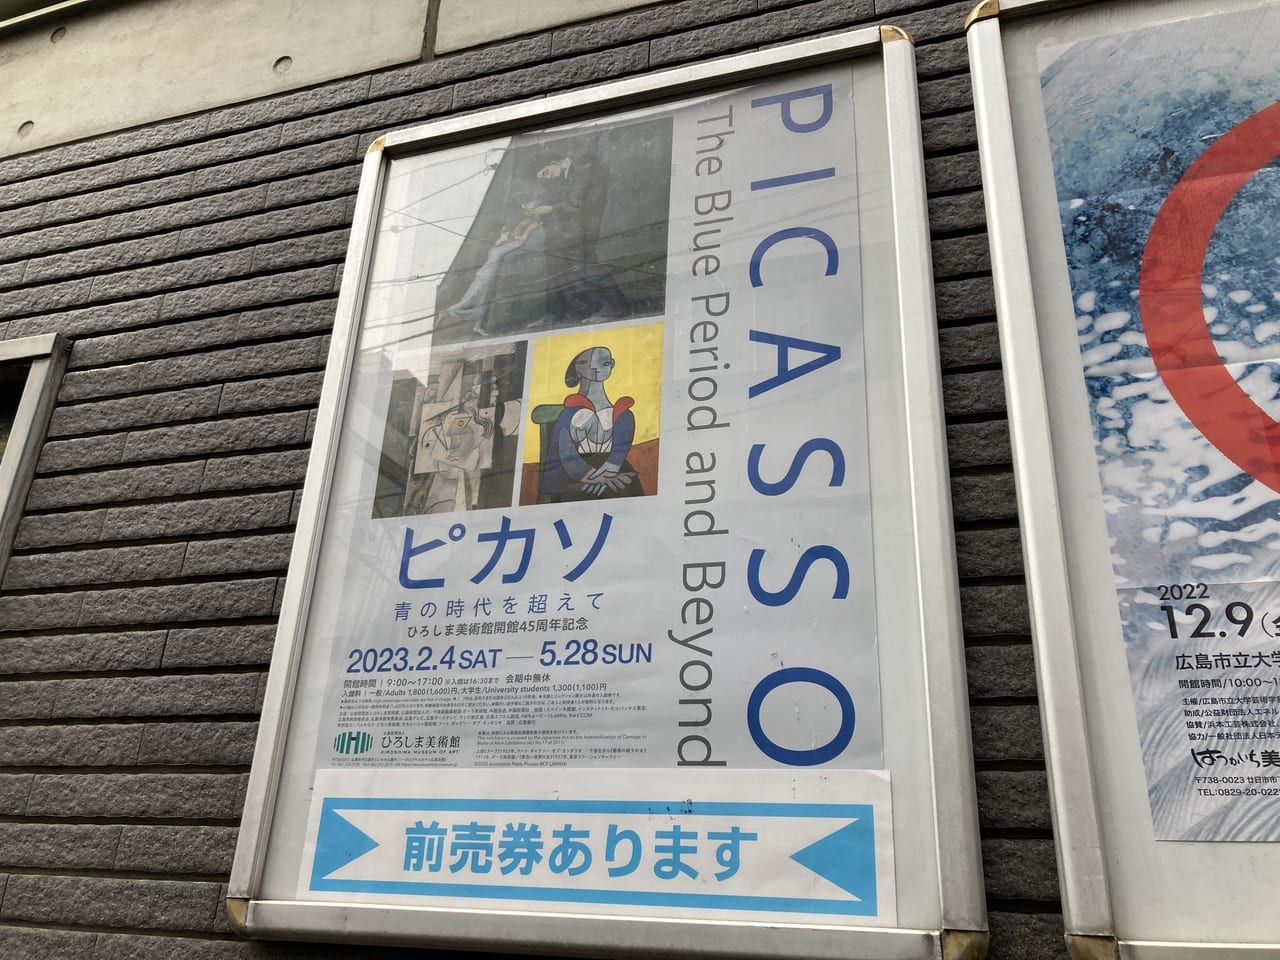 2022年12月ピカソ展_ひろしま美術館開催予定